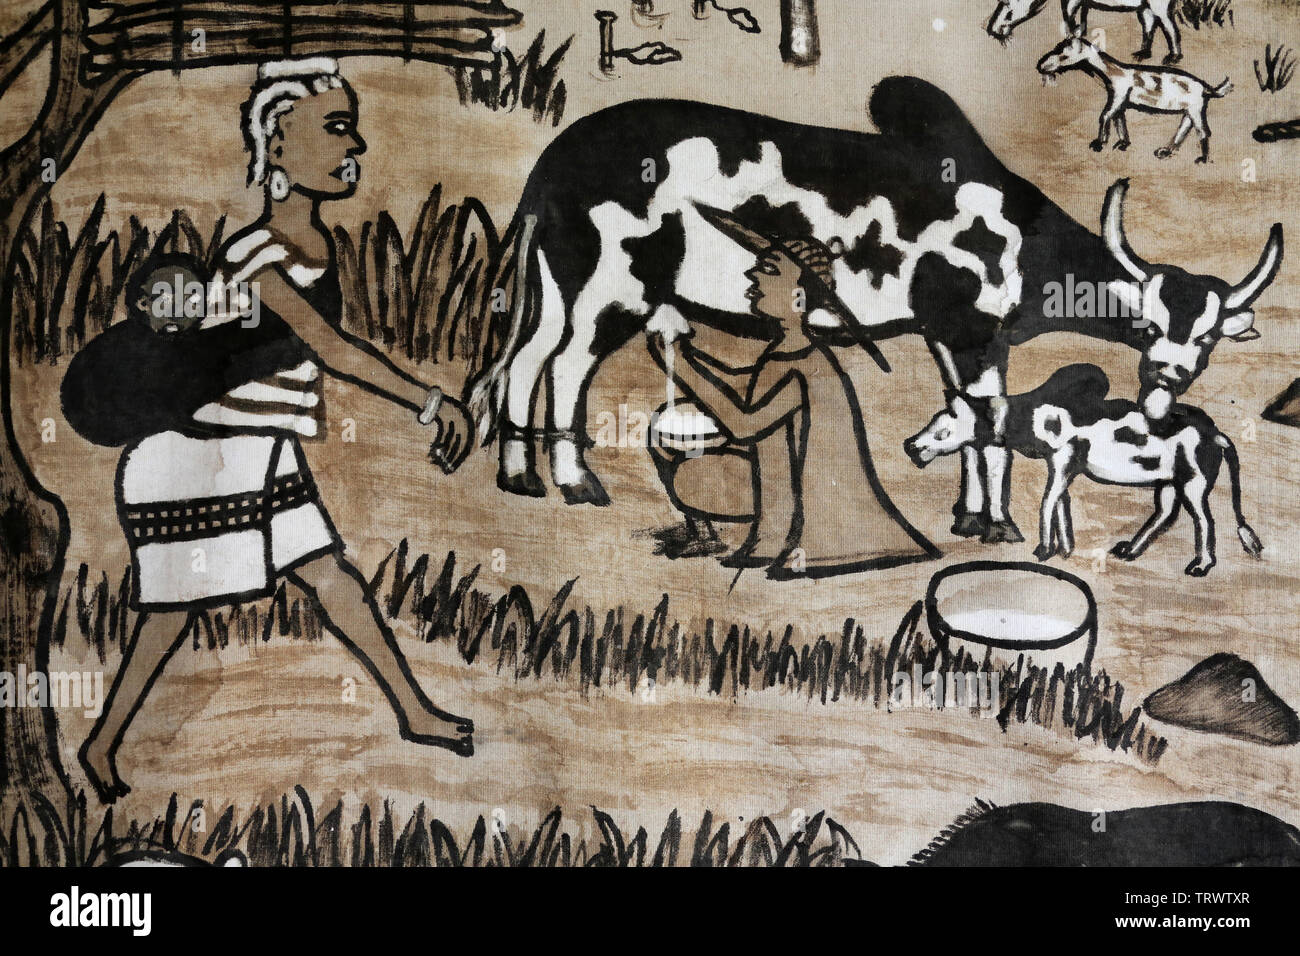 Traite d'une vache. Musée International du Golfe de Guinée. Lomé. Togo. Afrique de l'Ouest. Stock Photo